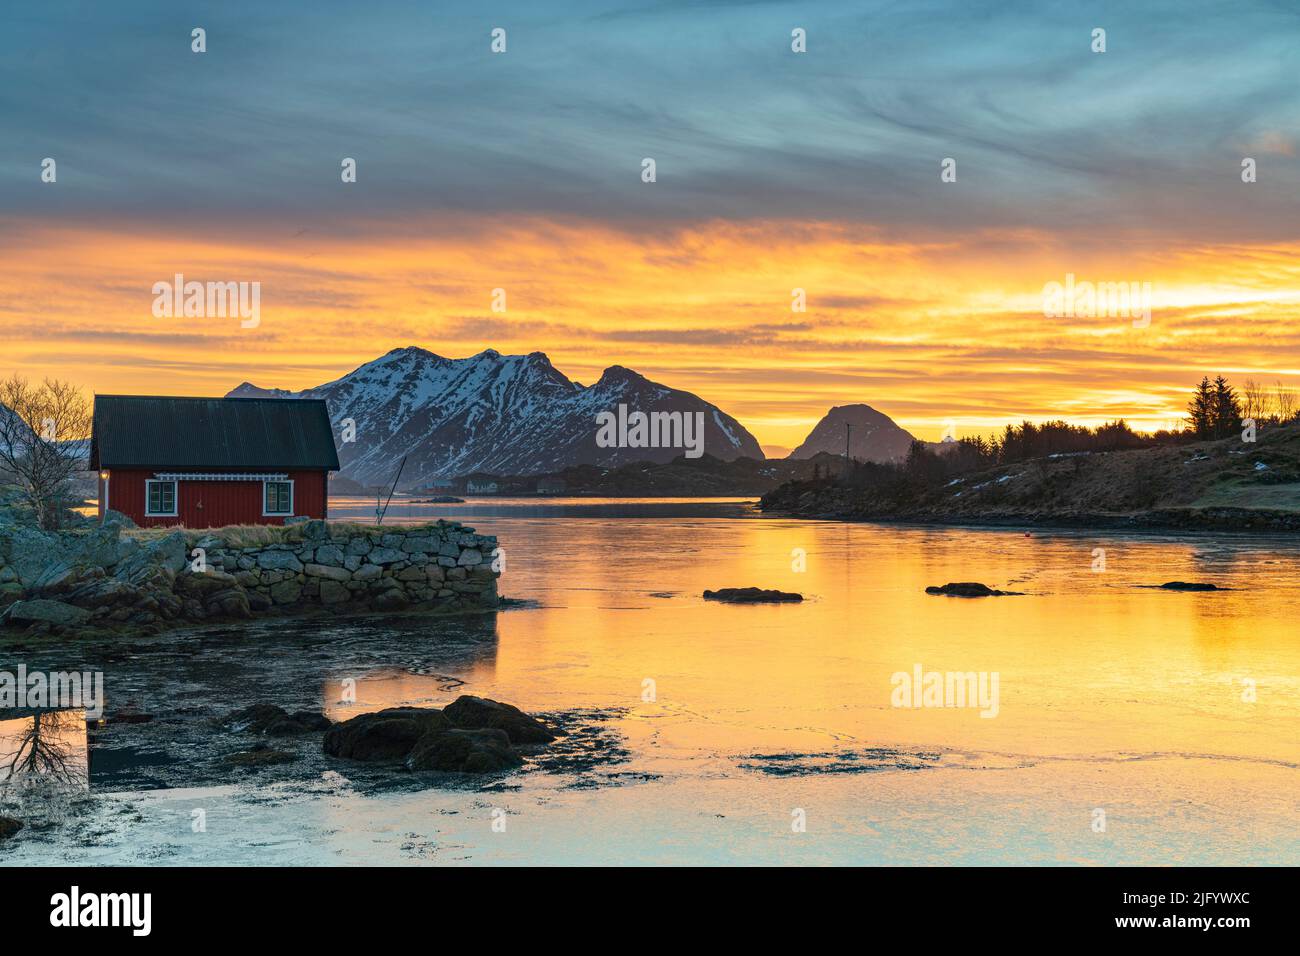 Montagne innevate e cabina rossa dei pescatori sotto il cielo all'alba, Ballstad, Vestvagoy, Isole Lofoten, Norvegia, Scandinavia, Europa Foto Stock